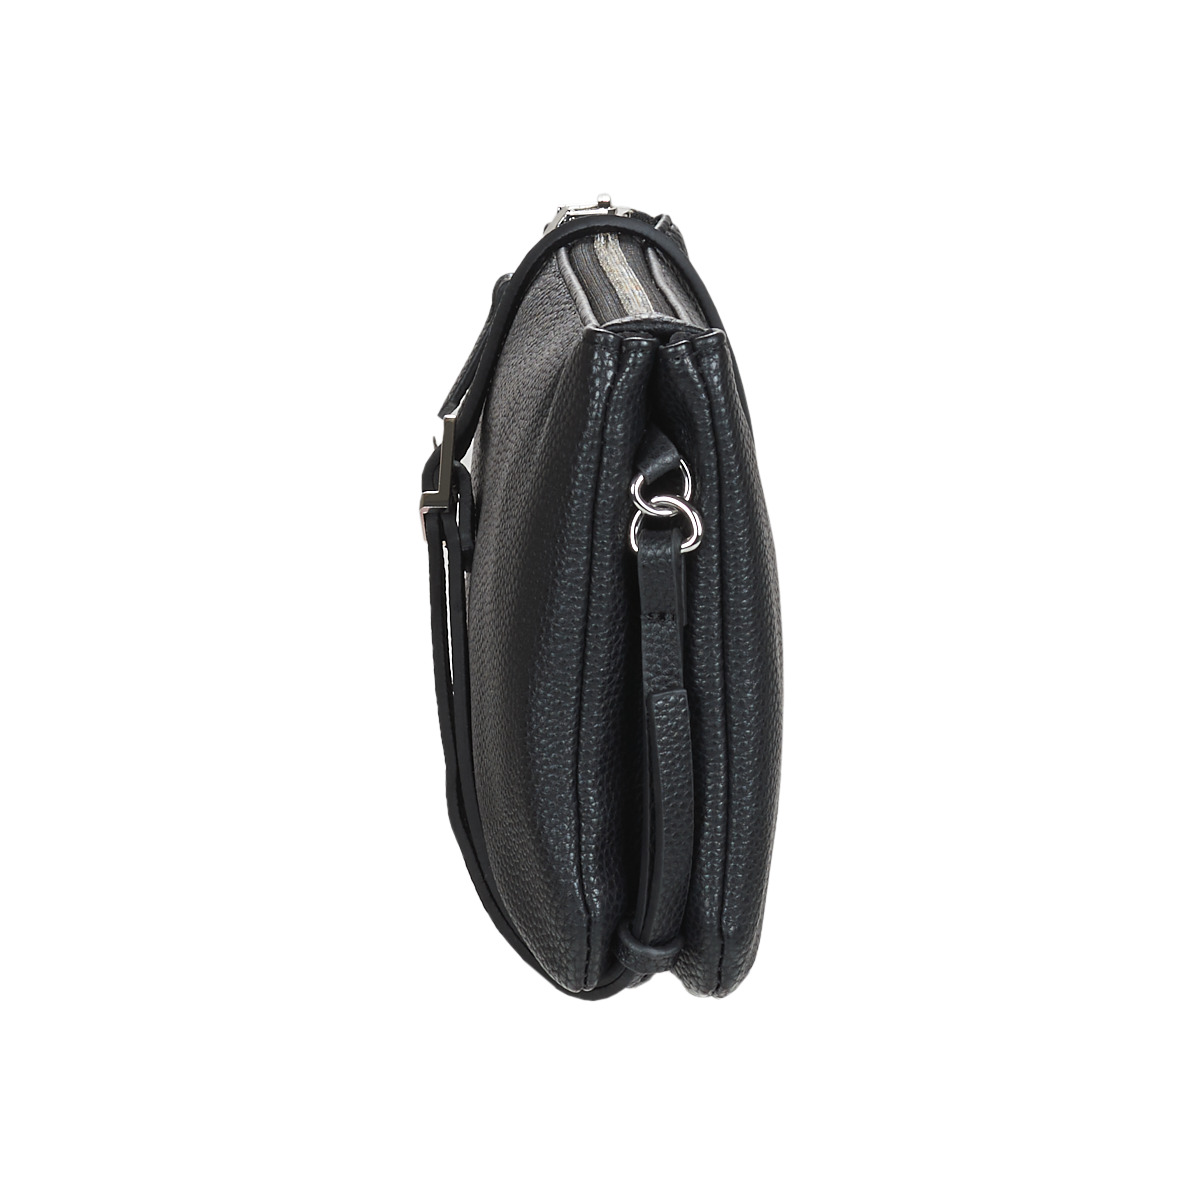 Esprit BLACK Olive Shoulder Bag tlYSH2uZ